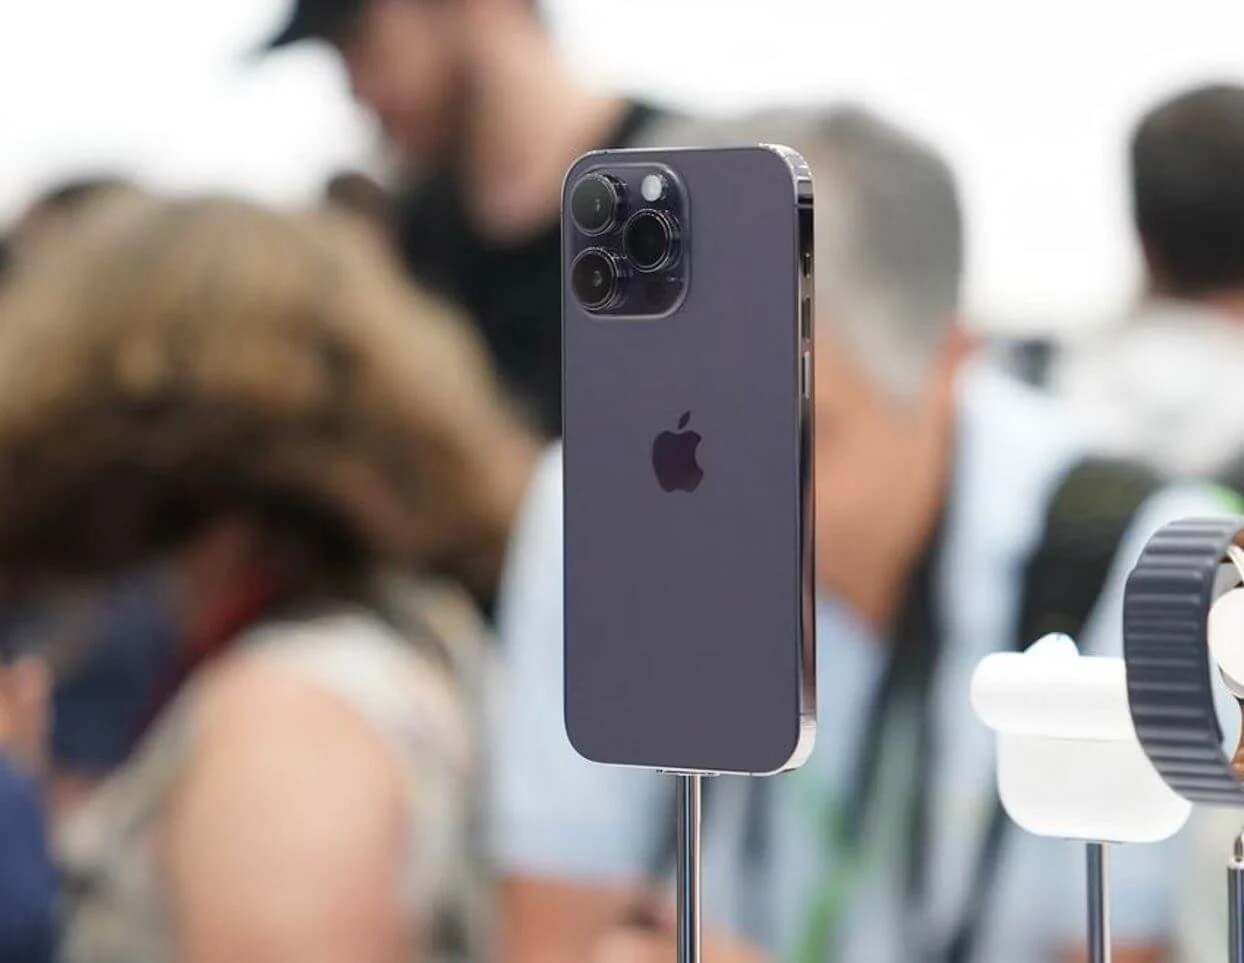 Kuo: Apples Umsatz mit iPhone-Verkäufen könnte in diesem Quartal aufgrund der Proteste in der Foxconn-Fabrik um 20-30% sinken